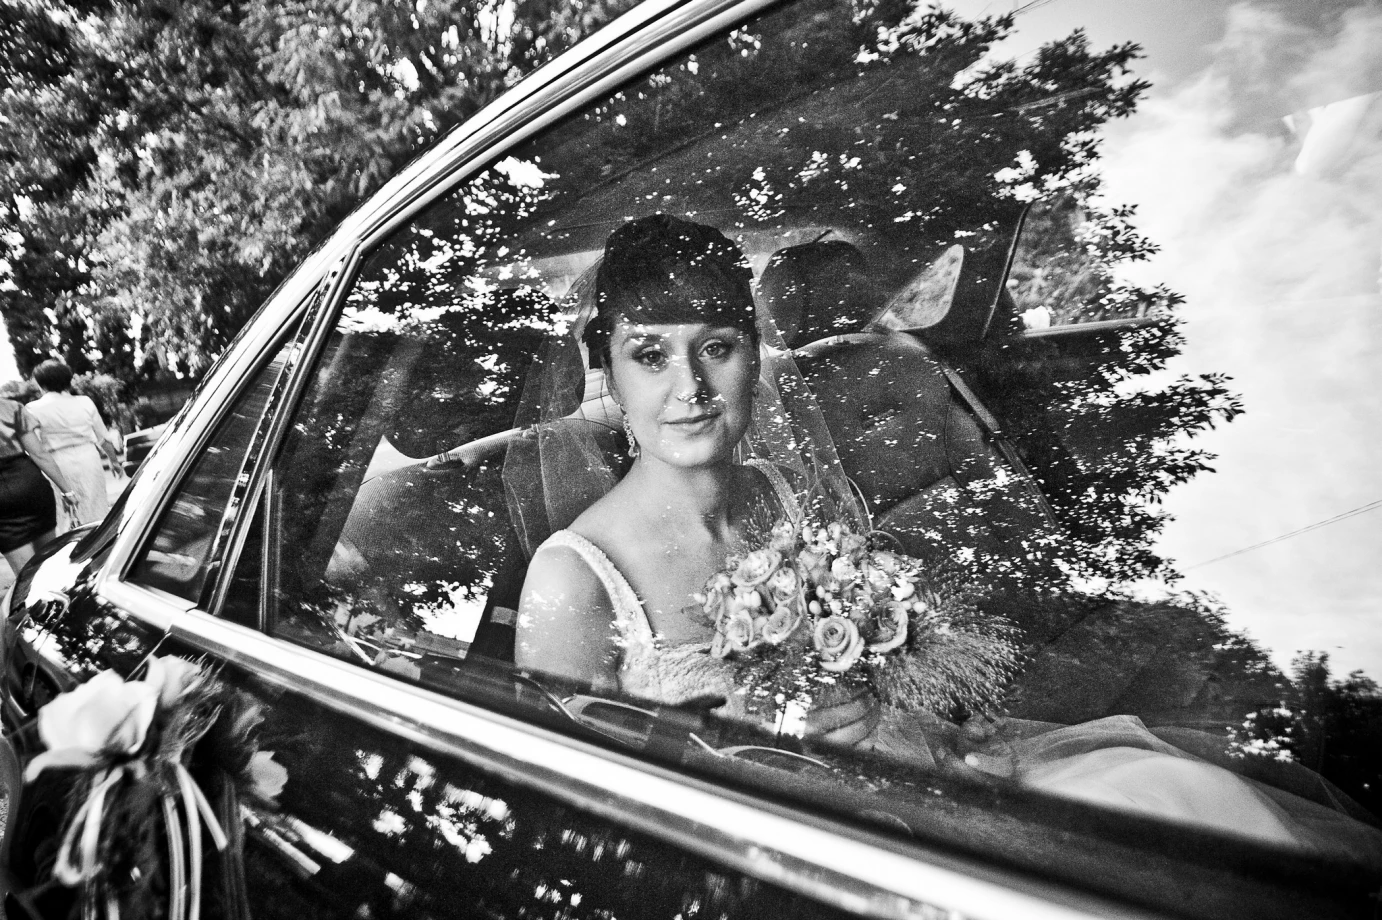 zdjęcia warszawa fotograf daniel-wojtczak portfolio zdjecia slubne inspiracje wesele plener slubny sesja slubna